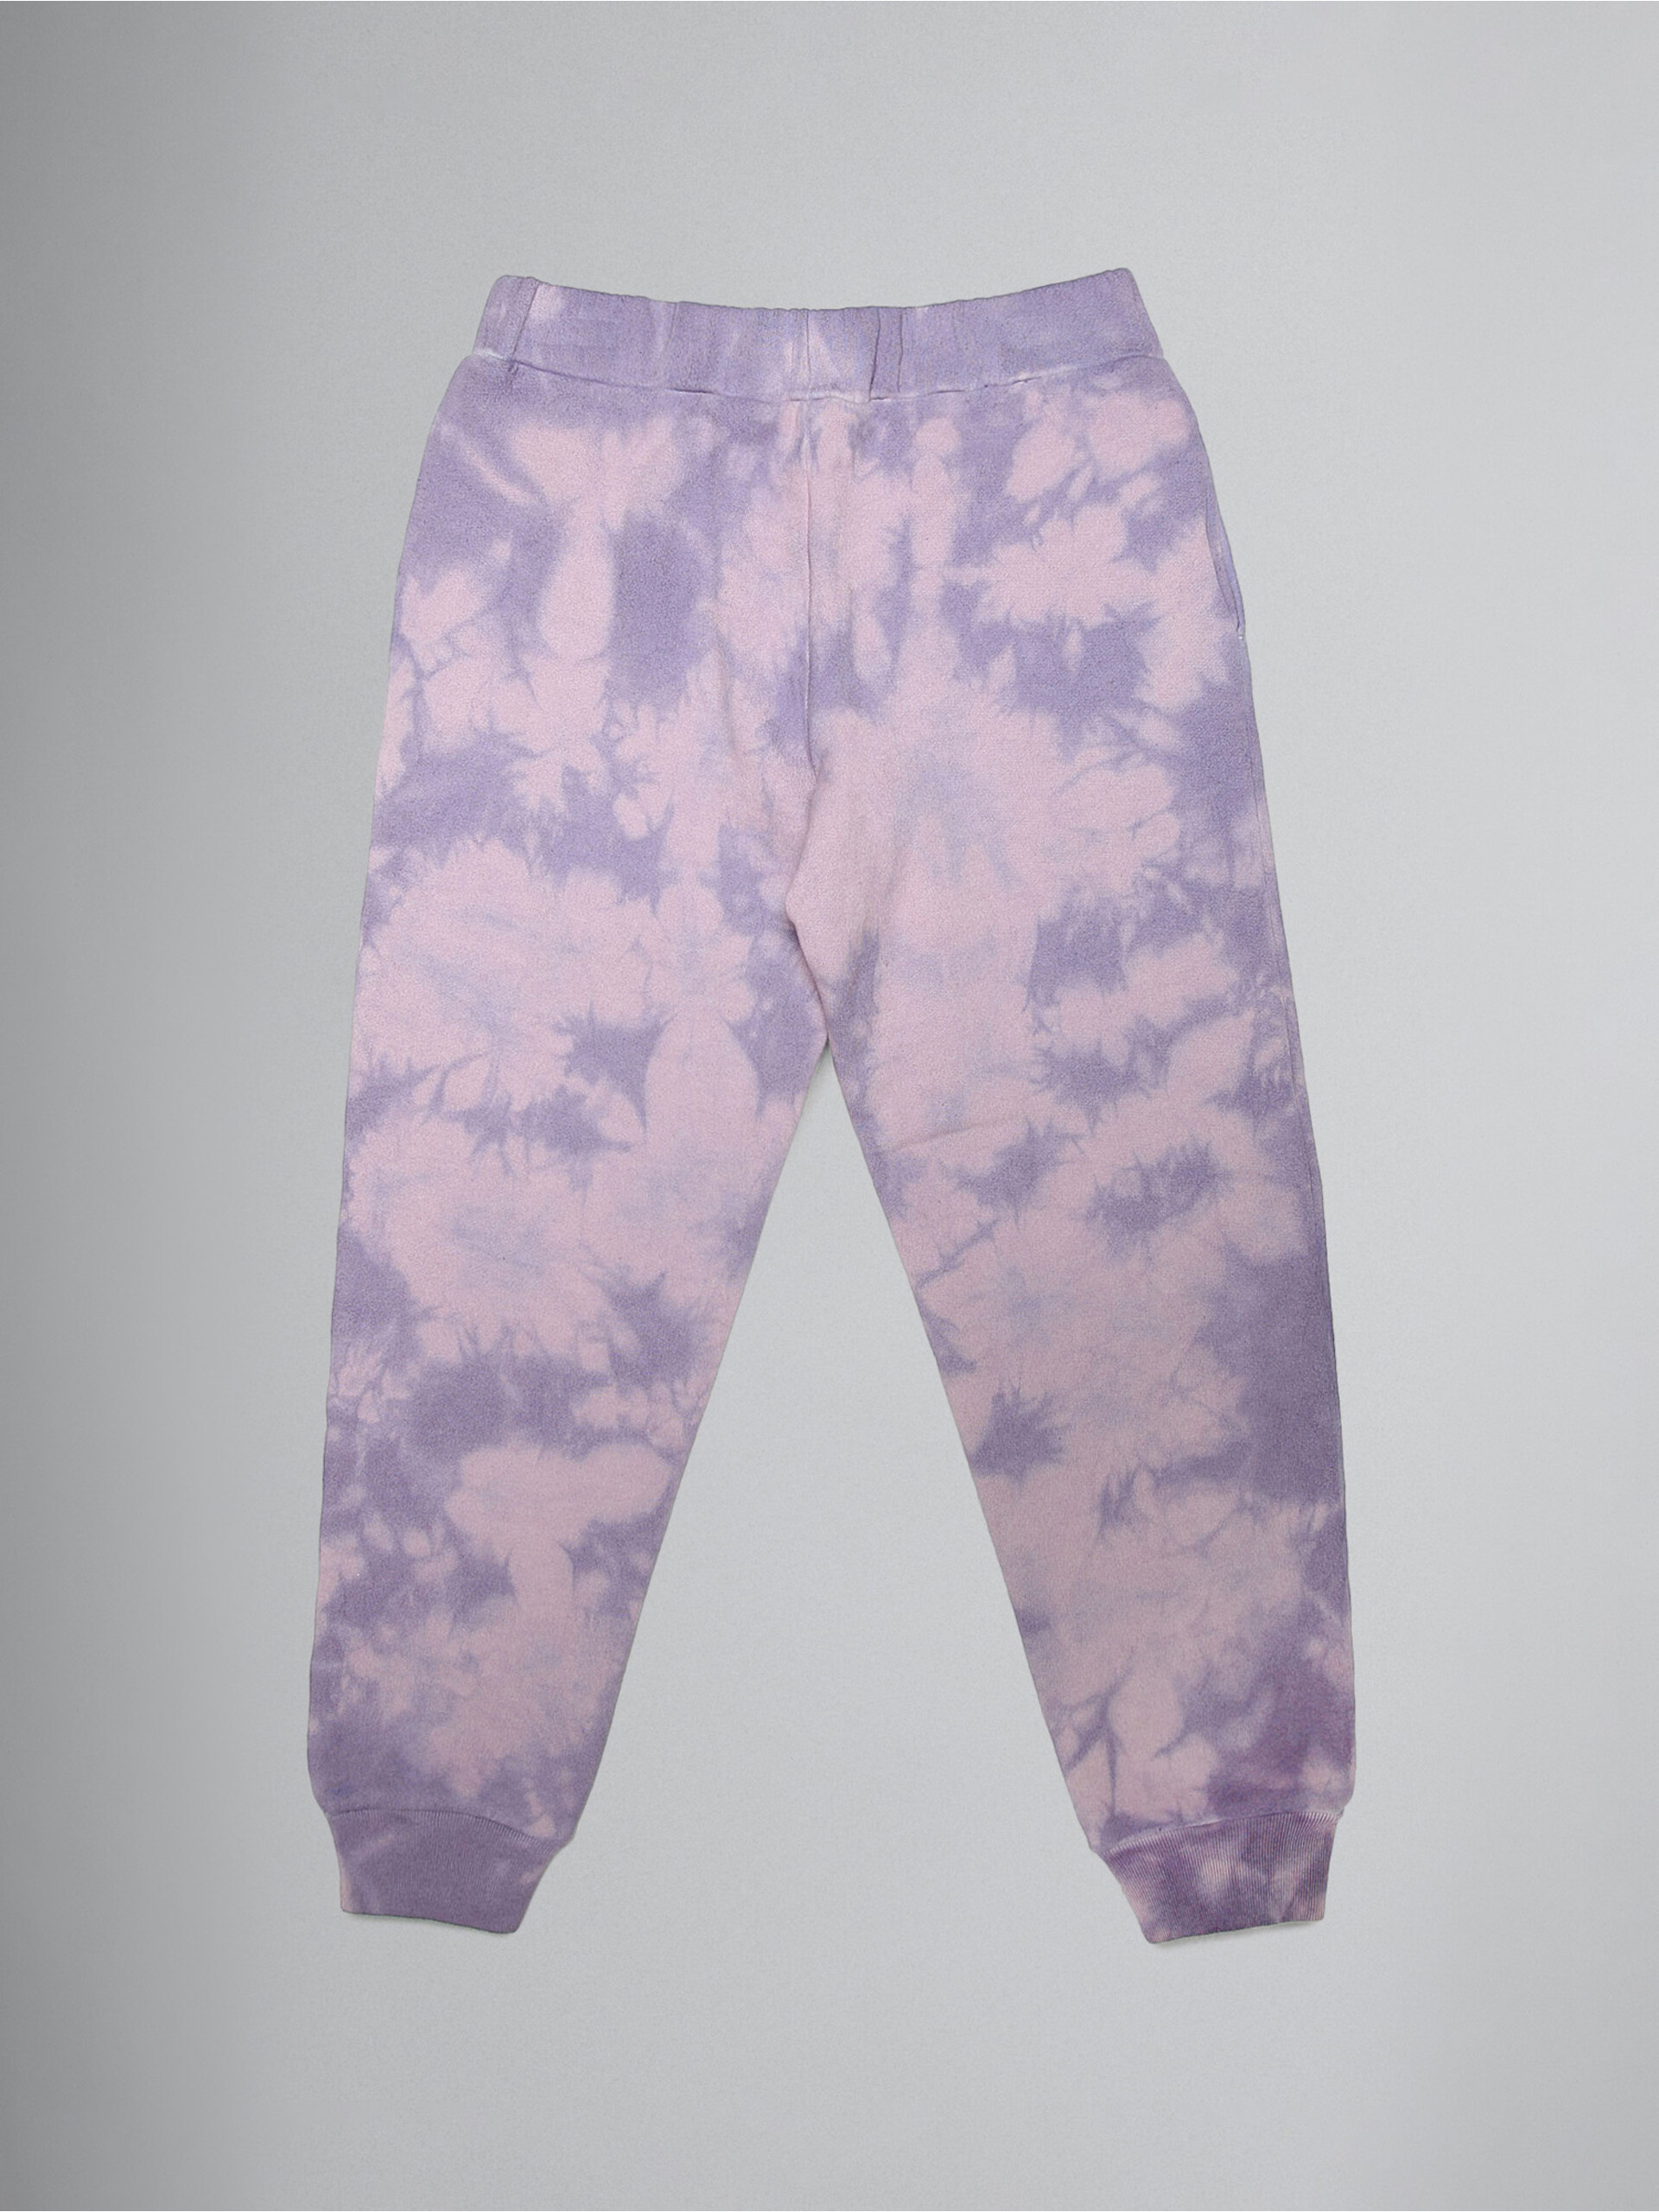 Lavender tie-dye track pants with metallic logo prints - Pants - Image 2